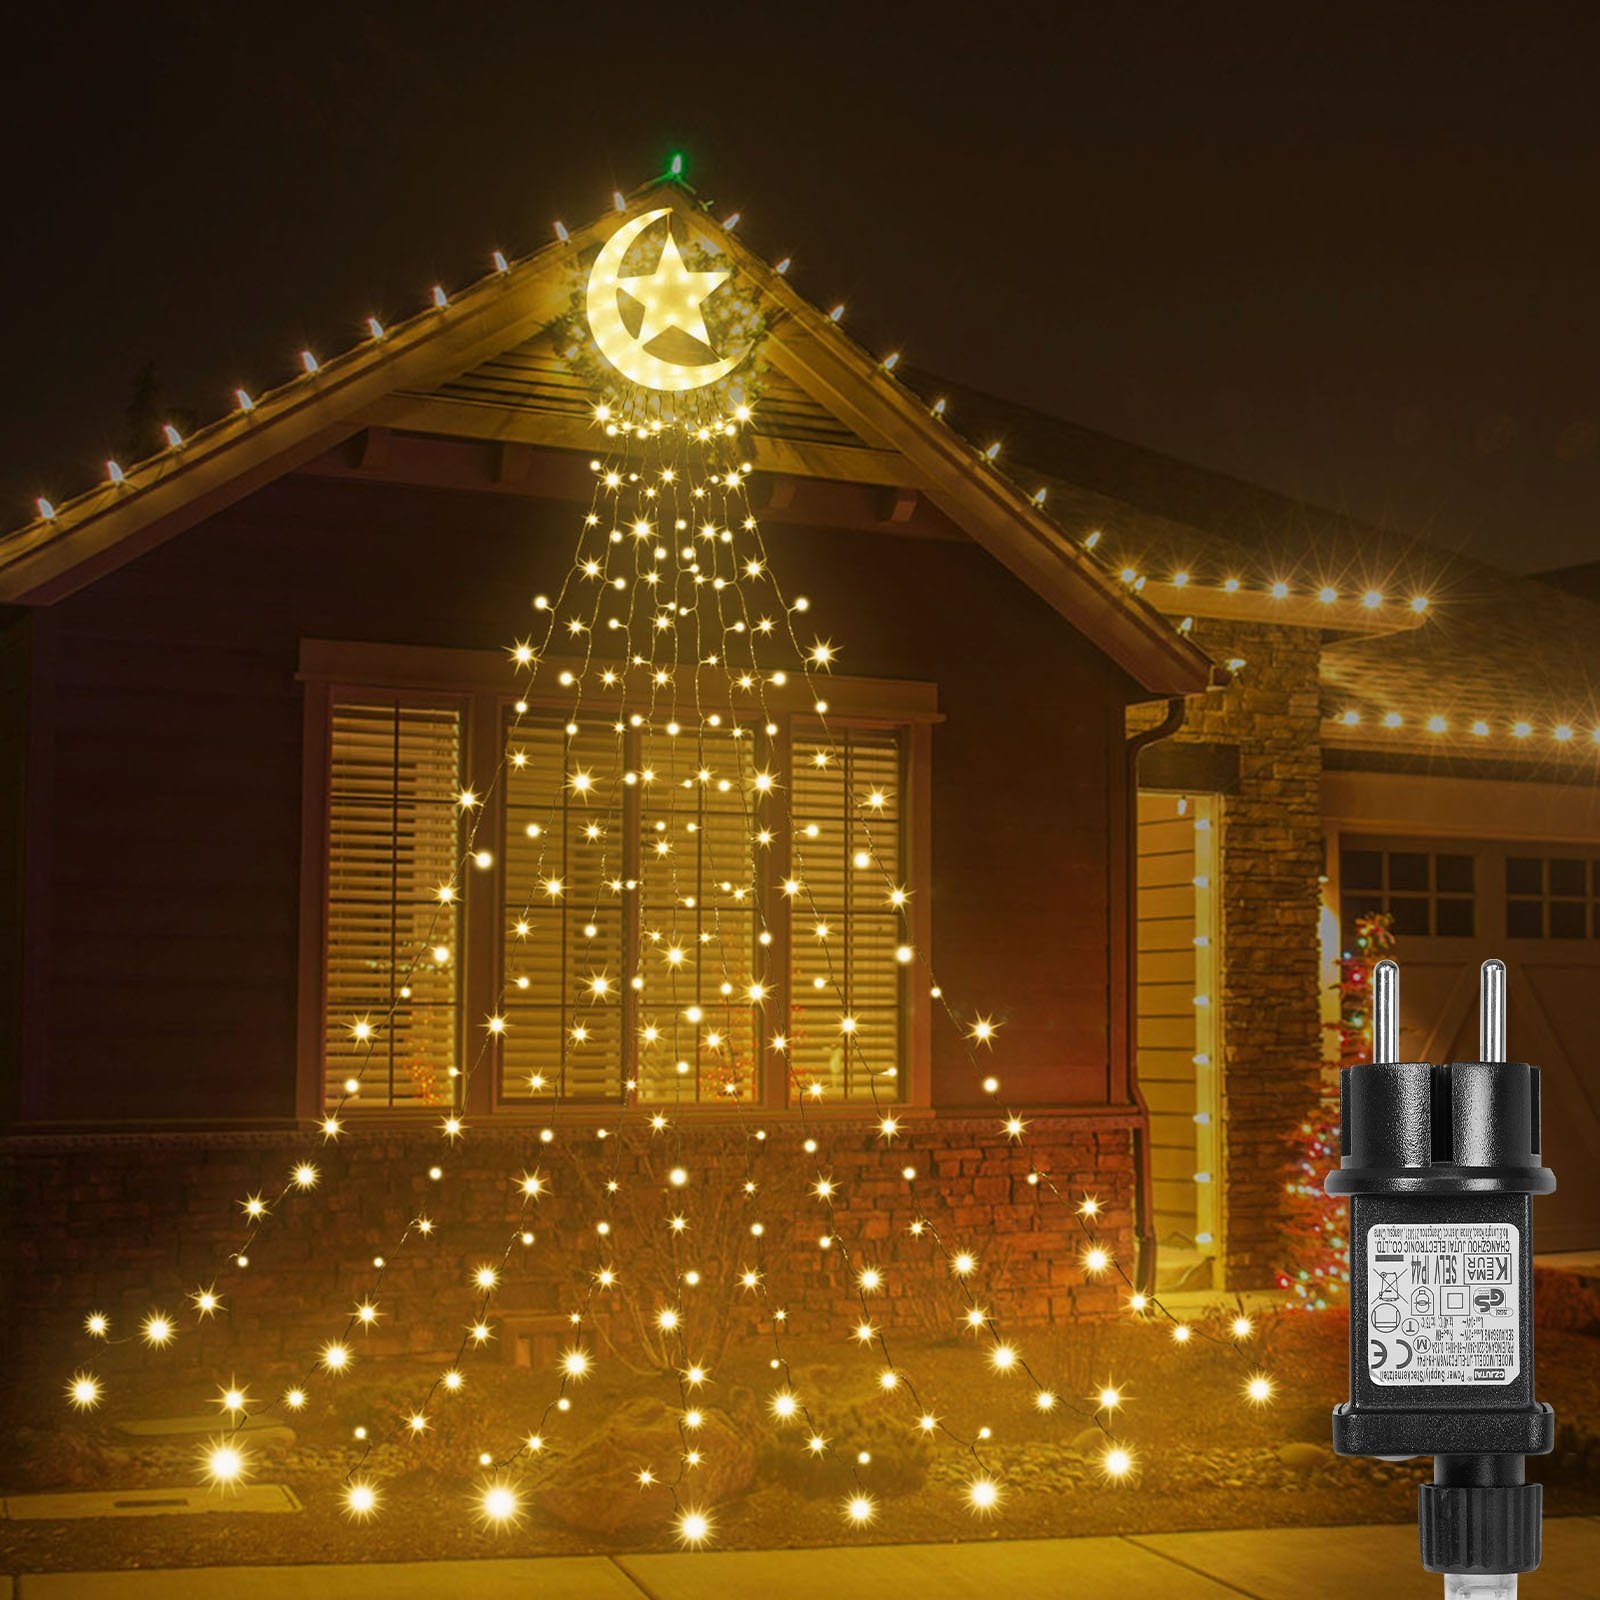 Weiß mit Laybasic Topper LED-Lichterkette,Christbaumbeleuchtung,LED Lichterkette, Moon LED-Lichterkette 350-flammig, Weihnachtsbaum Warmes Star,Christbaumbeleuchtung,8-Modi,Timer,IP44